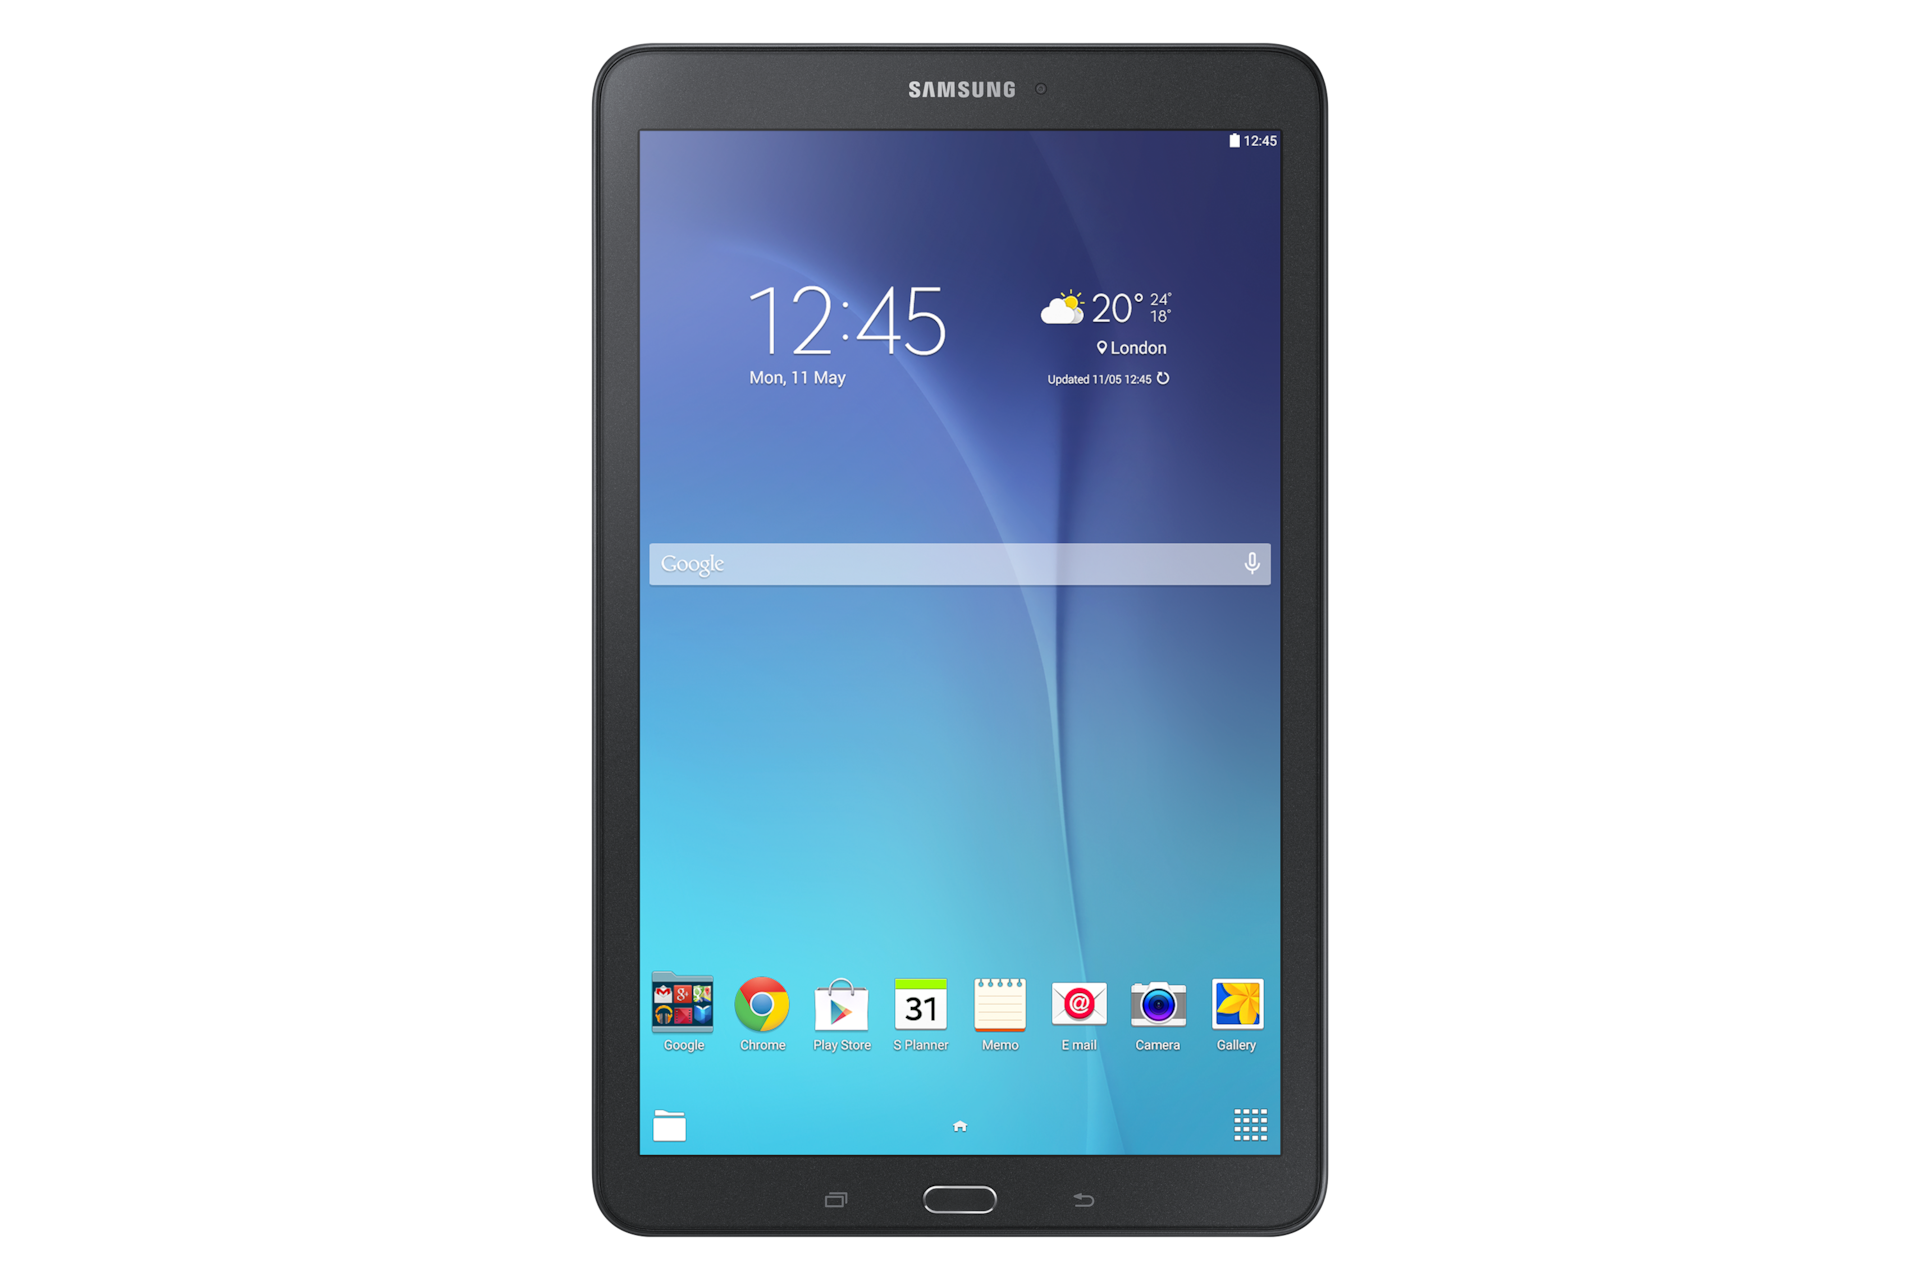 Galaxy Tab E, SM-T560NZKUXAC